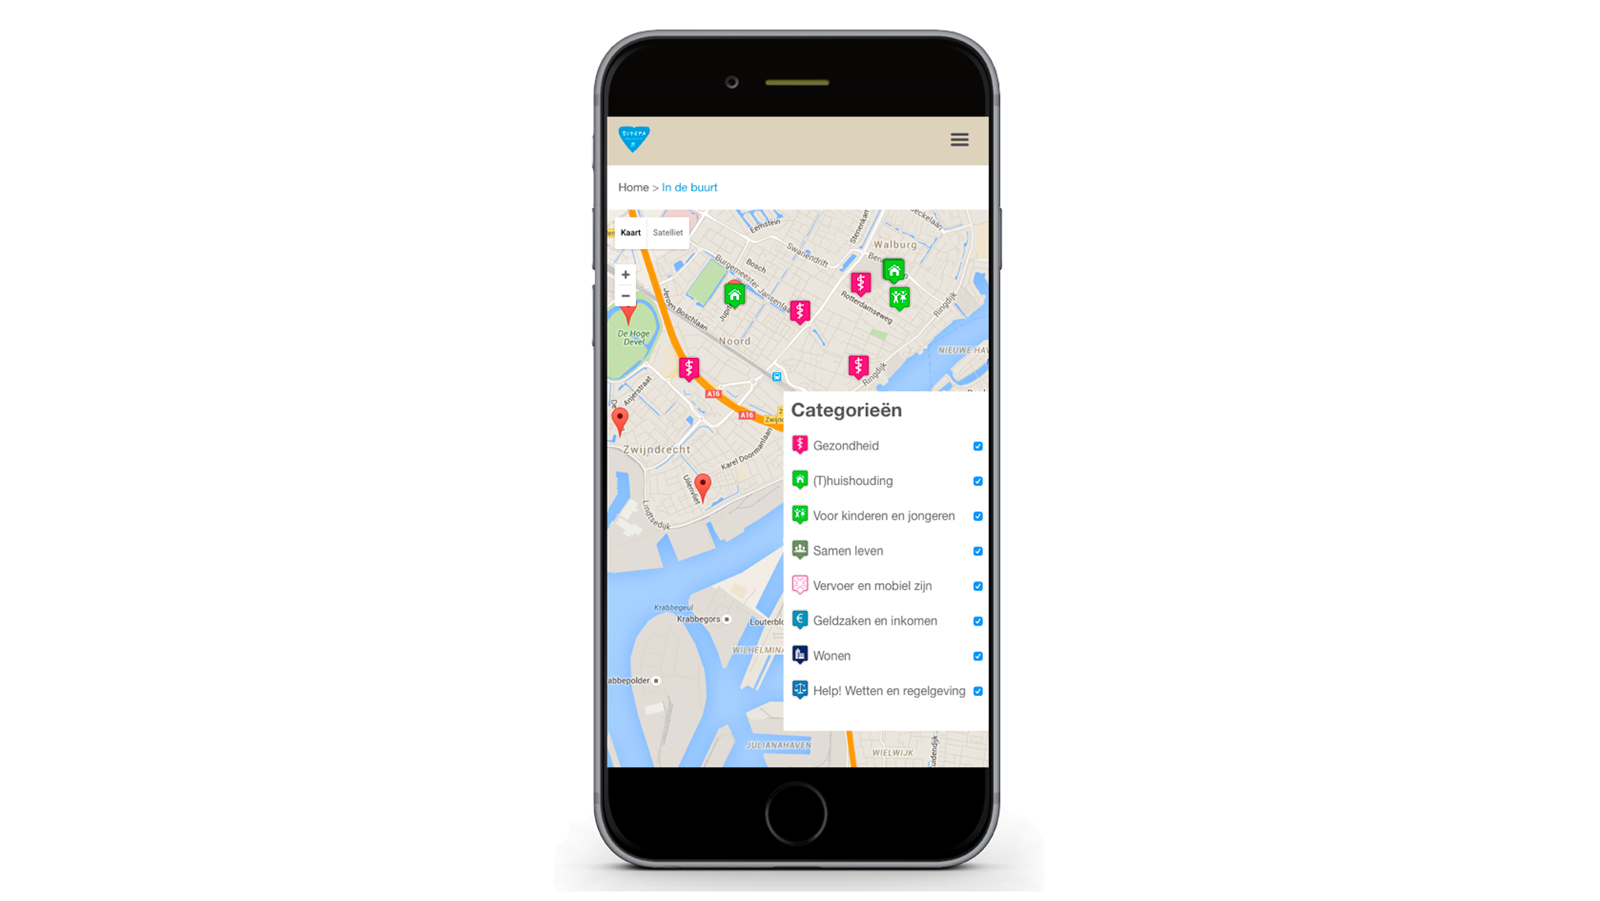 Responsive versie van de voorzieningen op de kaart in het Mett platform van Vivera Zwijndrecht